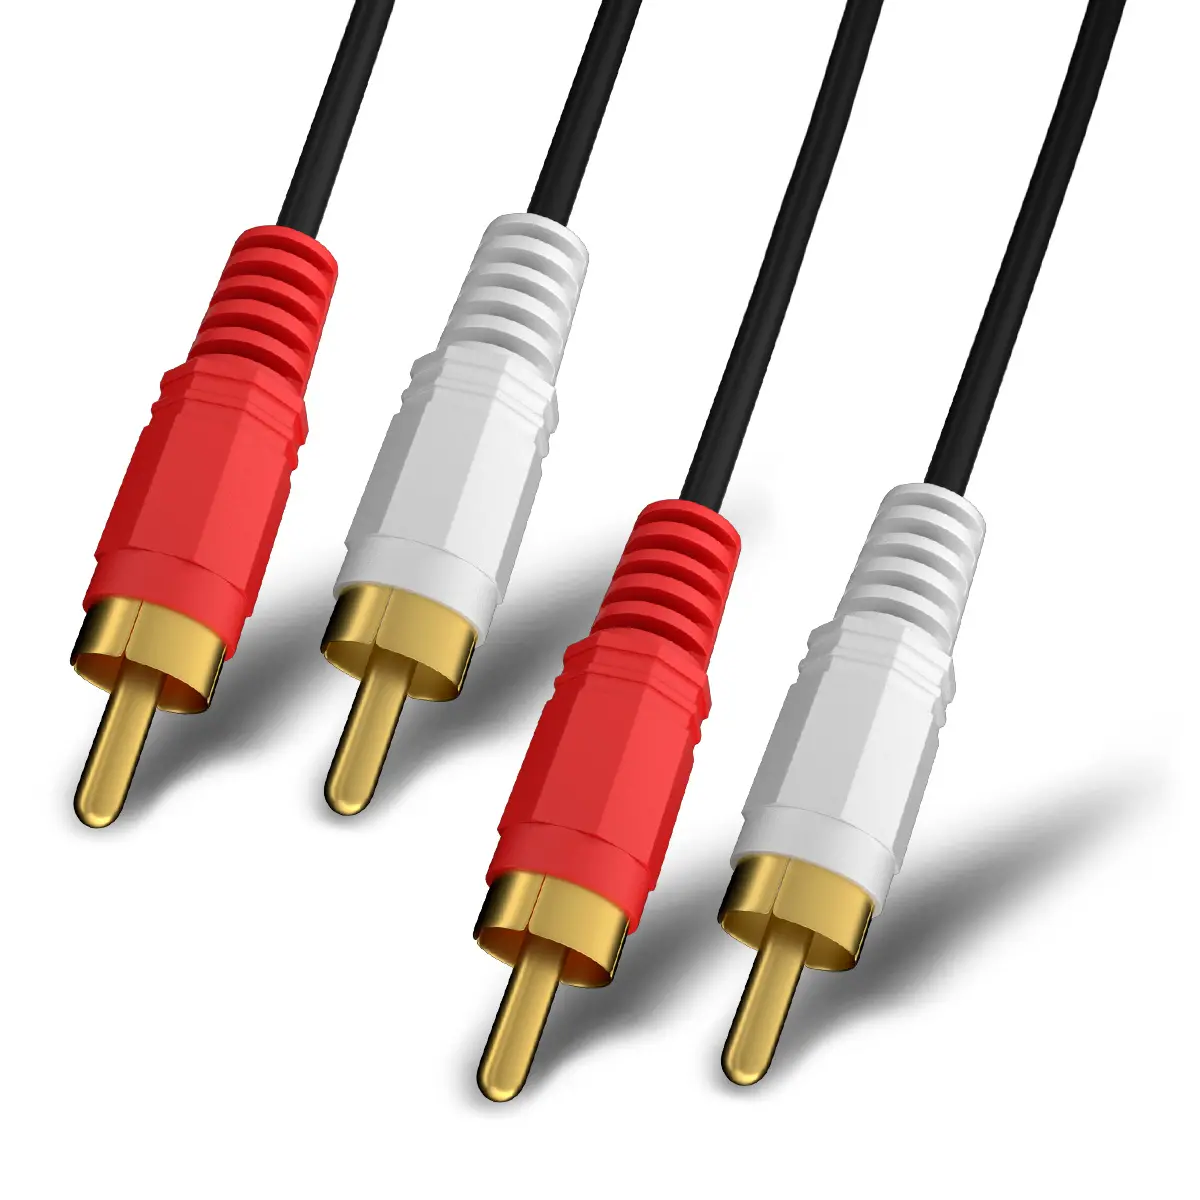 2 sampai 2 produsen Rca 2 saluran ke 2 saluran kabel jantan ke jantan aksesori mobil kabel Audio Rca ke kabel Rca